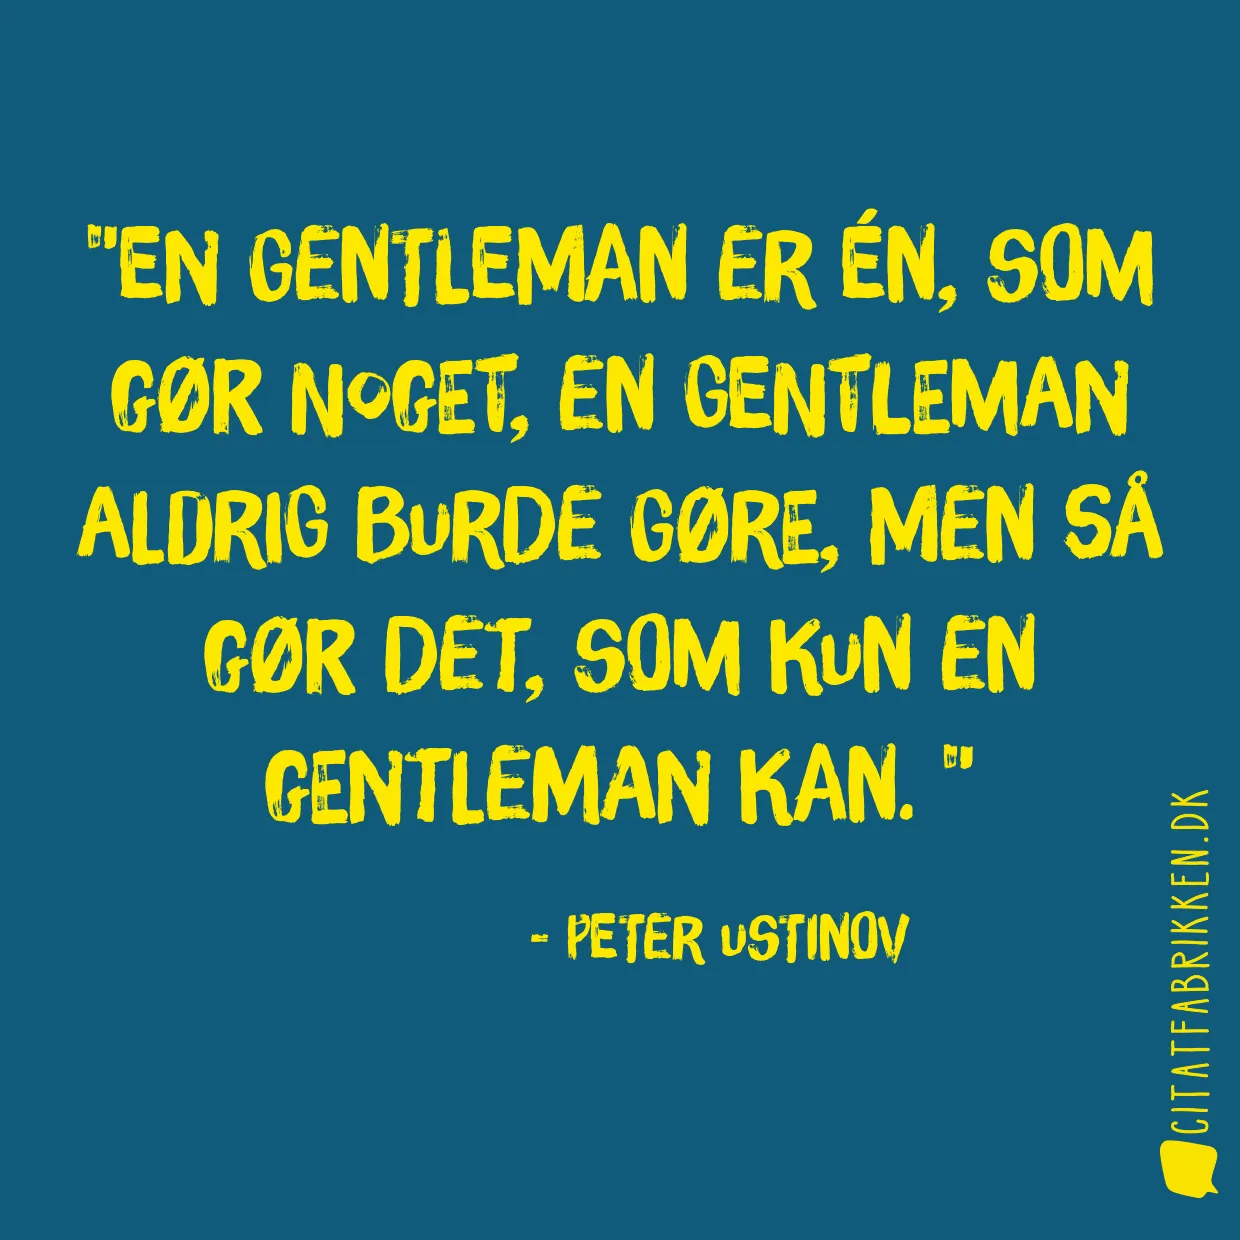 En gentleman er én, som gør noget, en gentleman aldrig burde gøre, men så gør det, som kun en gentleman kan. 